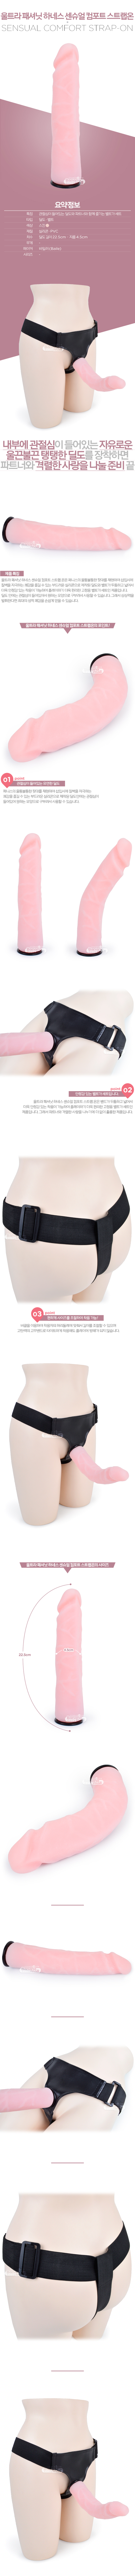 [멀티 스피드] 울트라 패셔닛 하네스 센슈얼 컴포트 스트랩온(Ultra Passionate Harness Sensual Comfort Strap-on) - 바일러(BW-022048) (BIR)